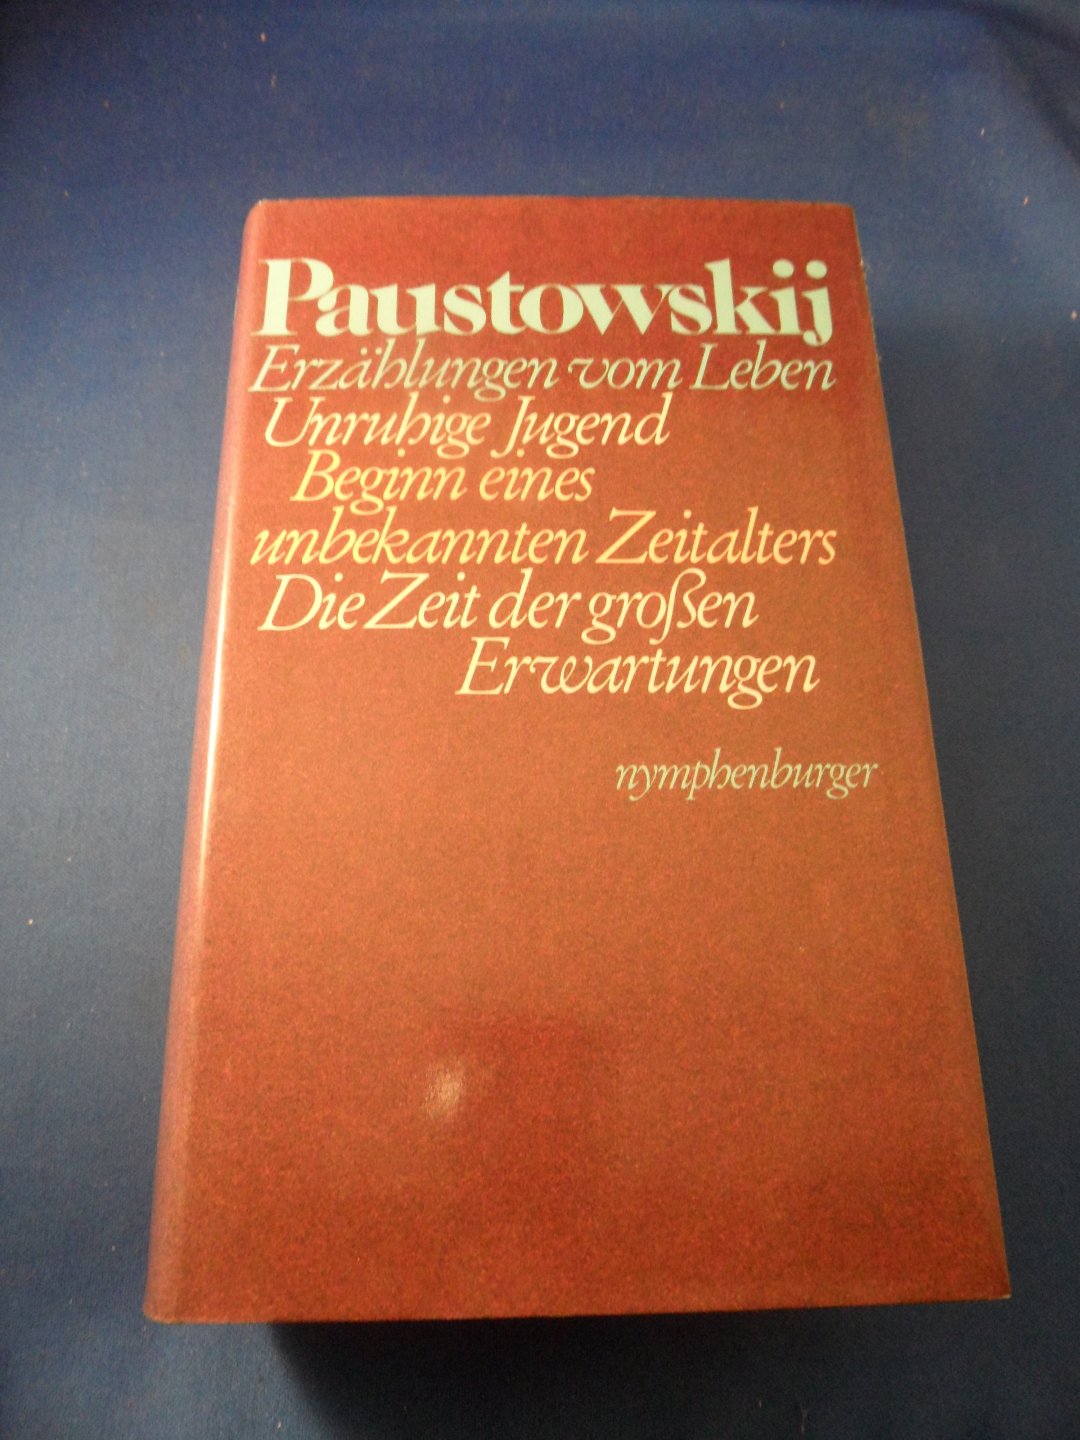 Paustowskij Konstantin - Erzählungen vom Leben - Unruhige Jugend, Beginn eines unbekannten Zeitalters, Die Zeit der grossen erwartungen